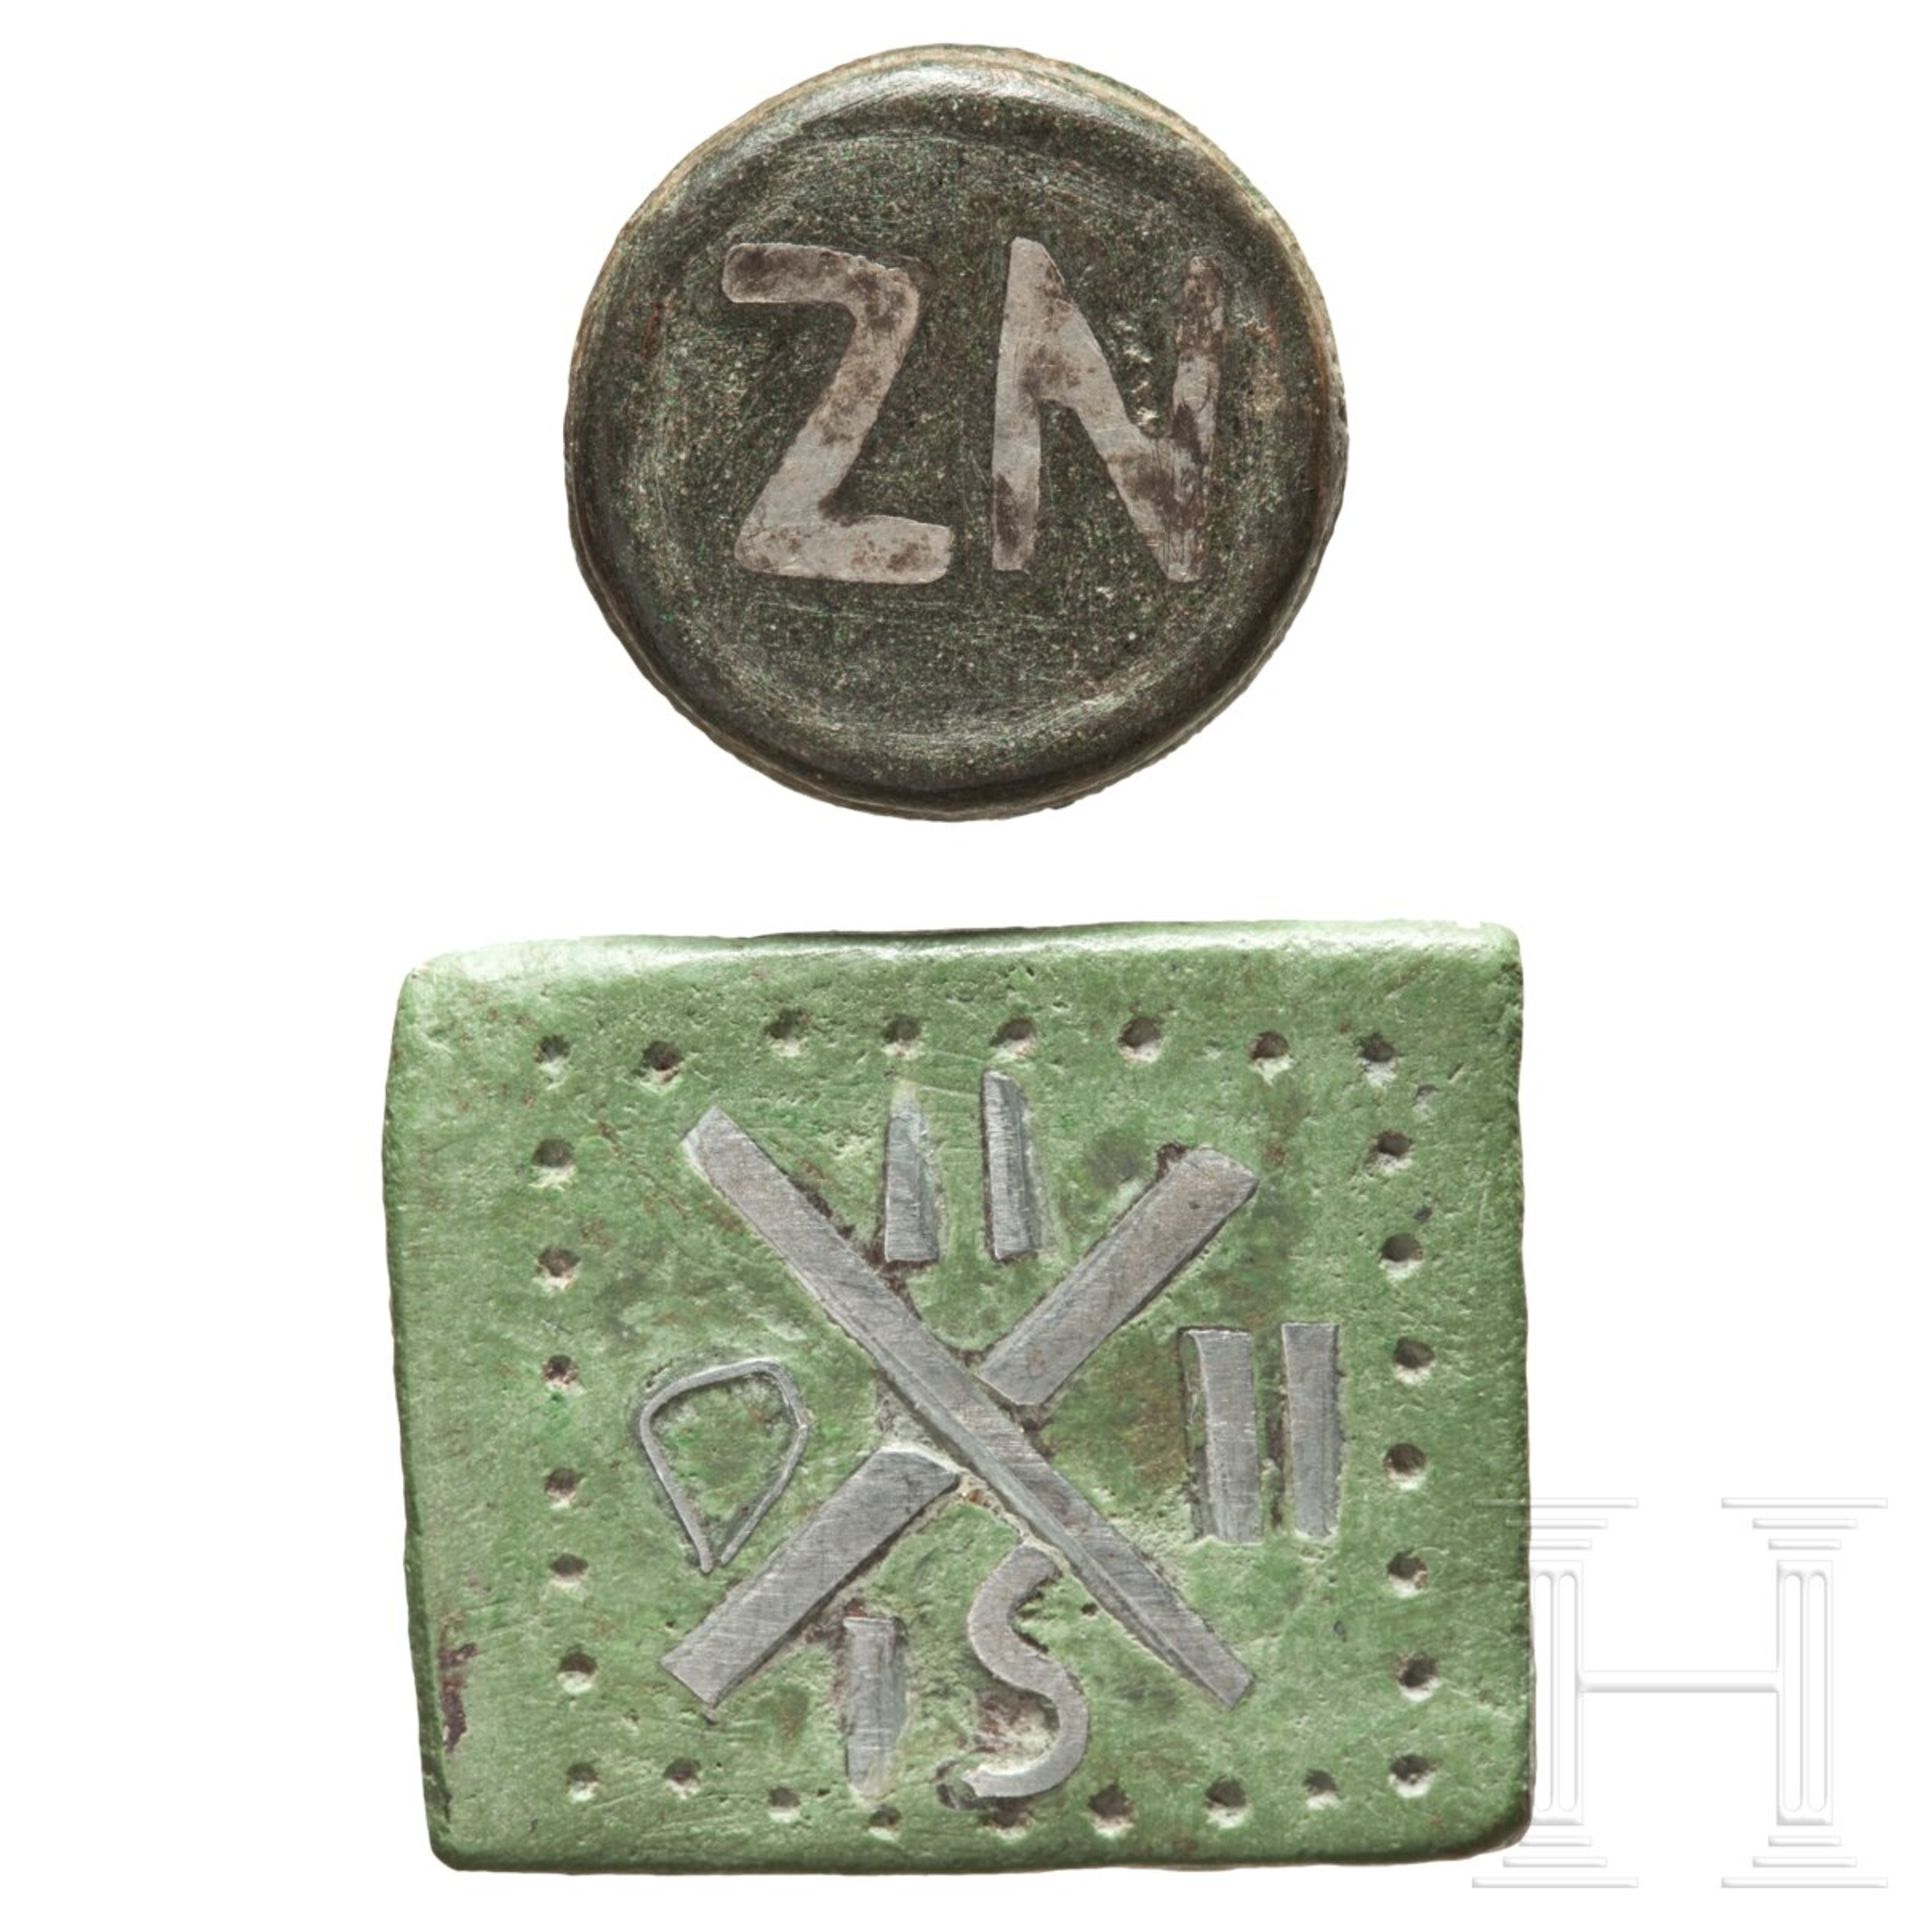 Zwei byzantinische Gewichte, östlicher Mittelmeerraum, 6. - 10. Jhdt.